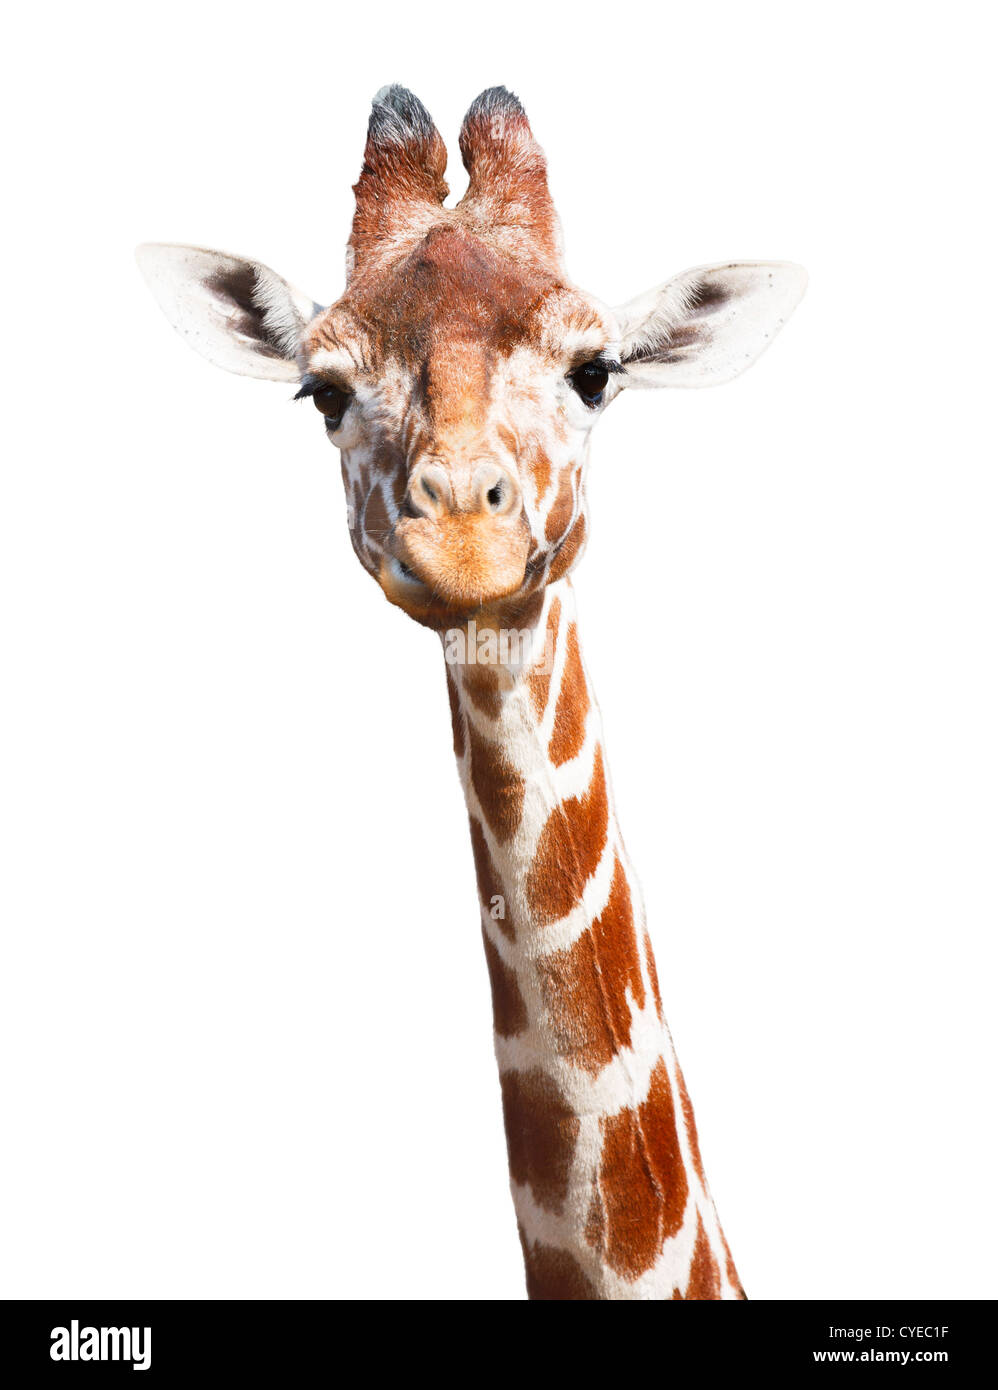 La tête et le cou de girafe isolé sur un fond blanc avec clipping path Banque D'Images